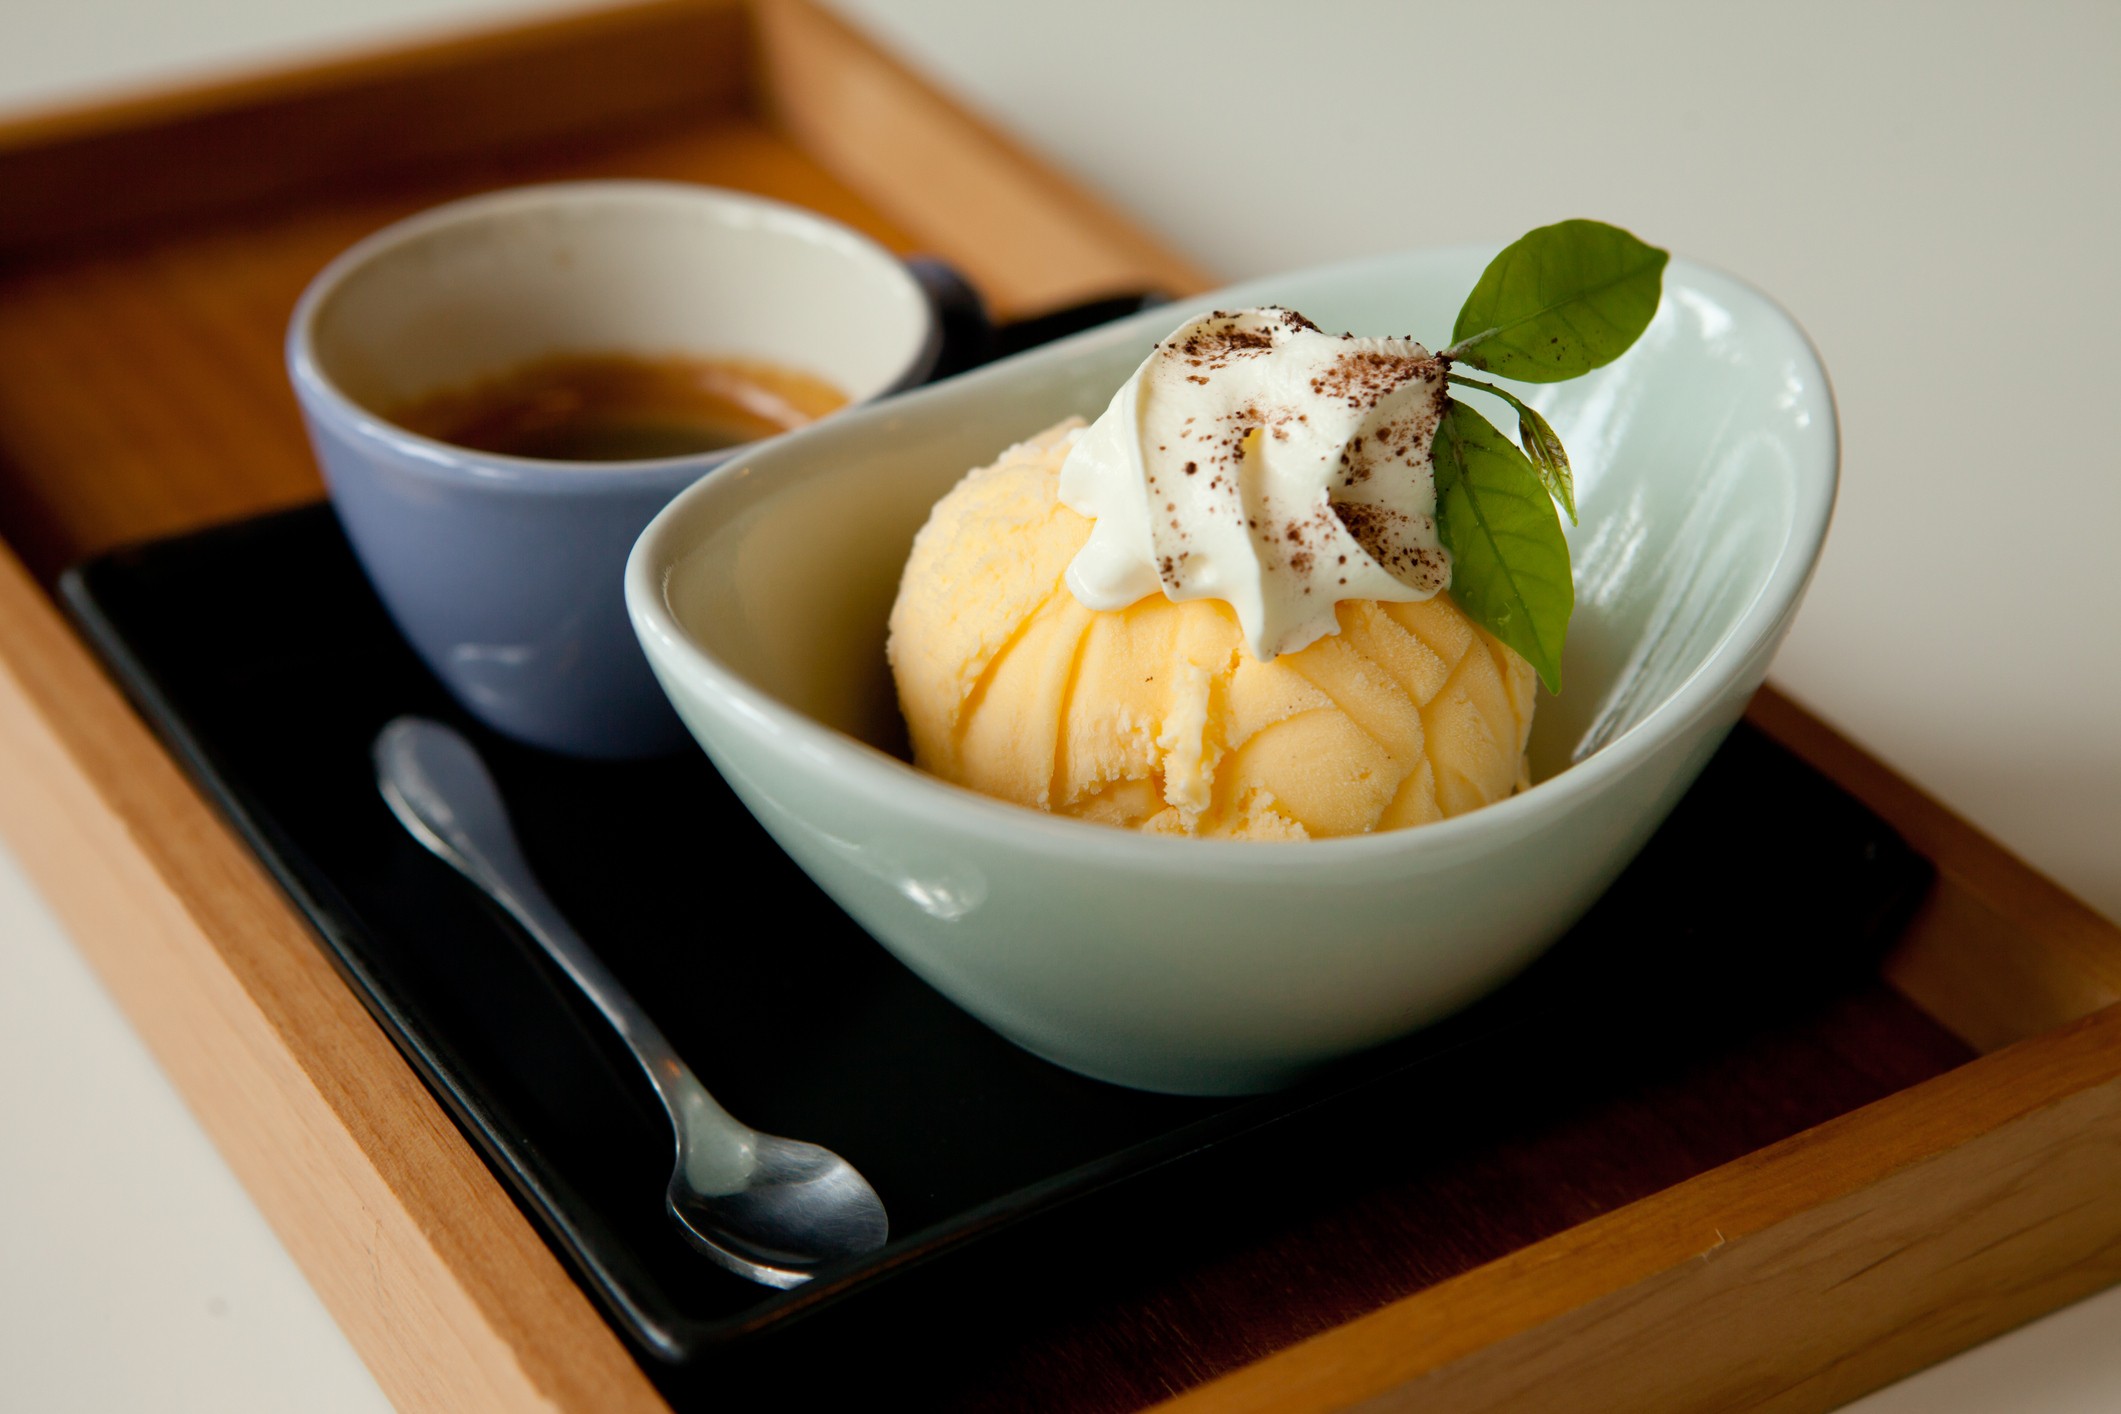 Precisa comer coisas geladas? Veja 4 receitas de sorvetes para fazer em casa (Foto: Getty Images)